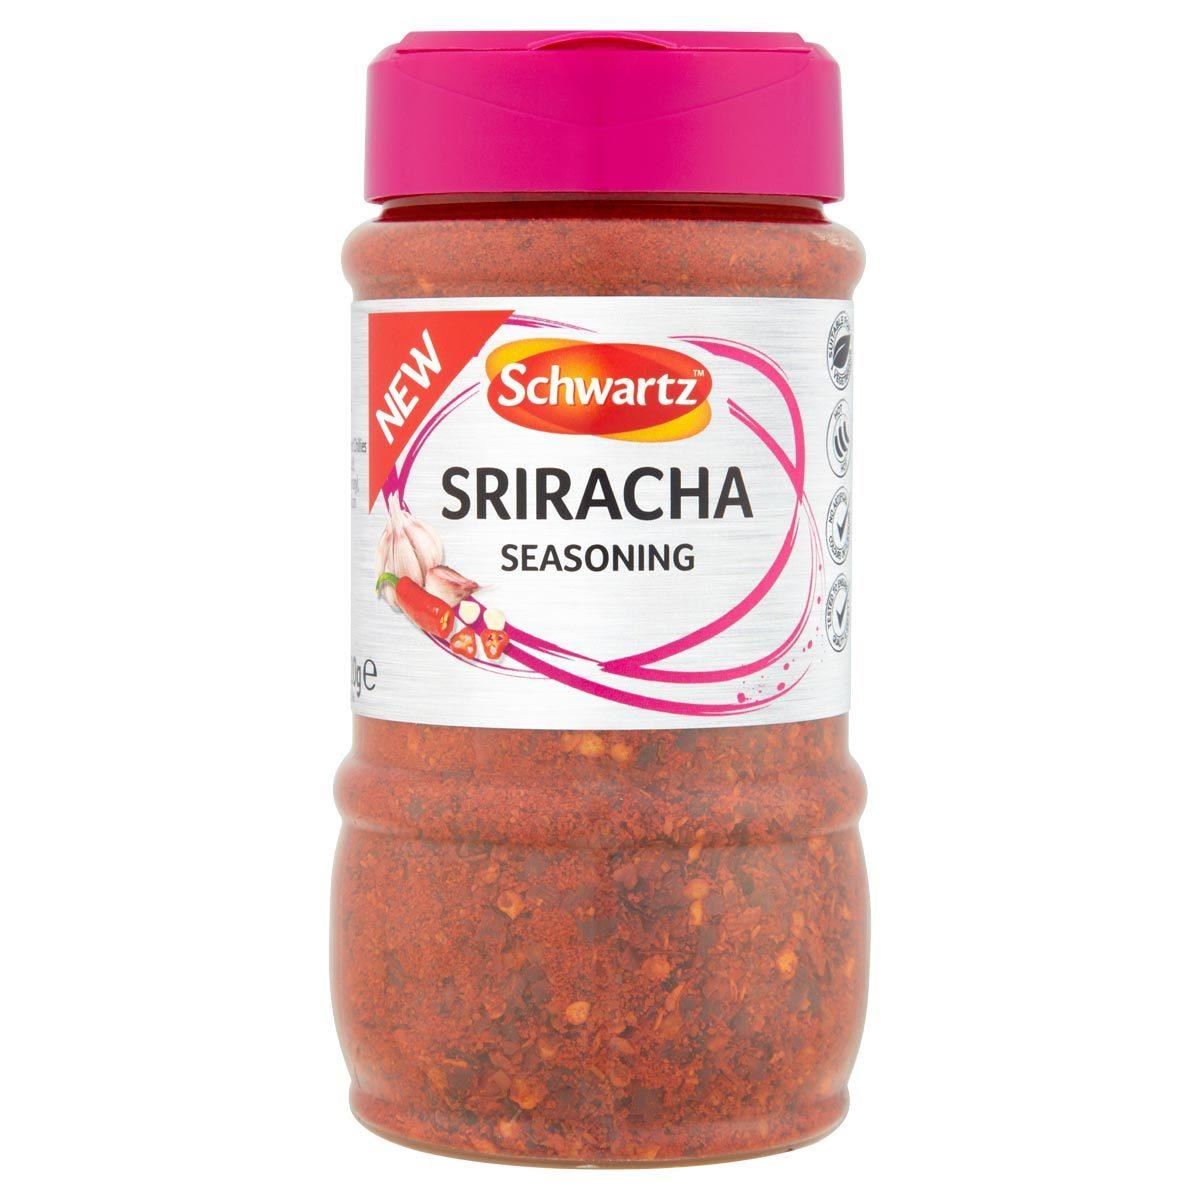 Schwartz Sriracha Seasoning Jar 320g